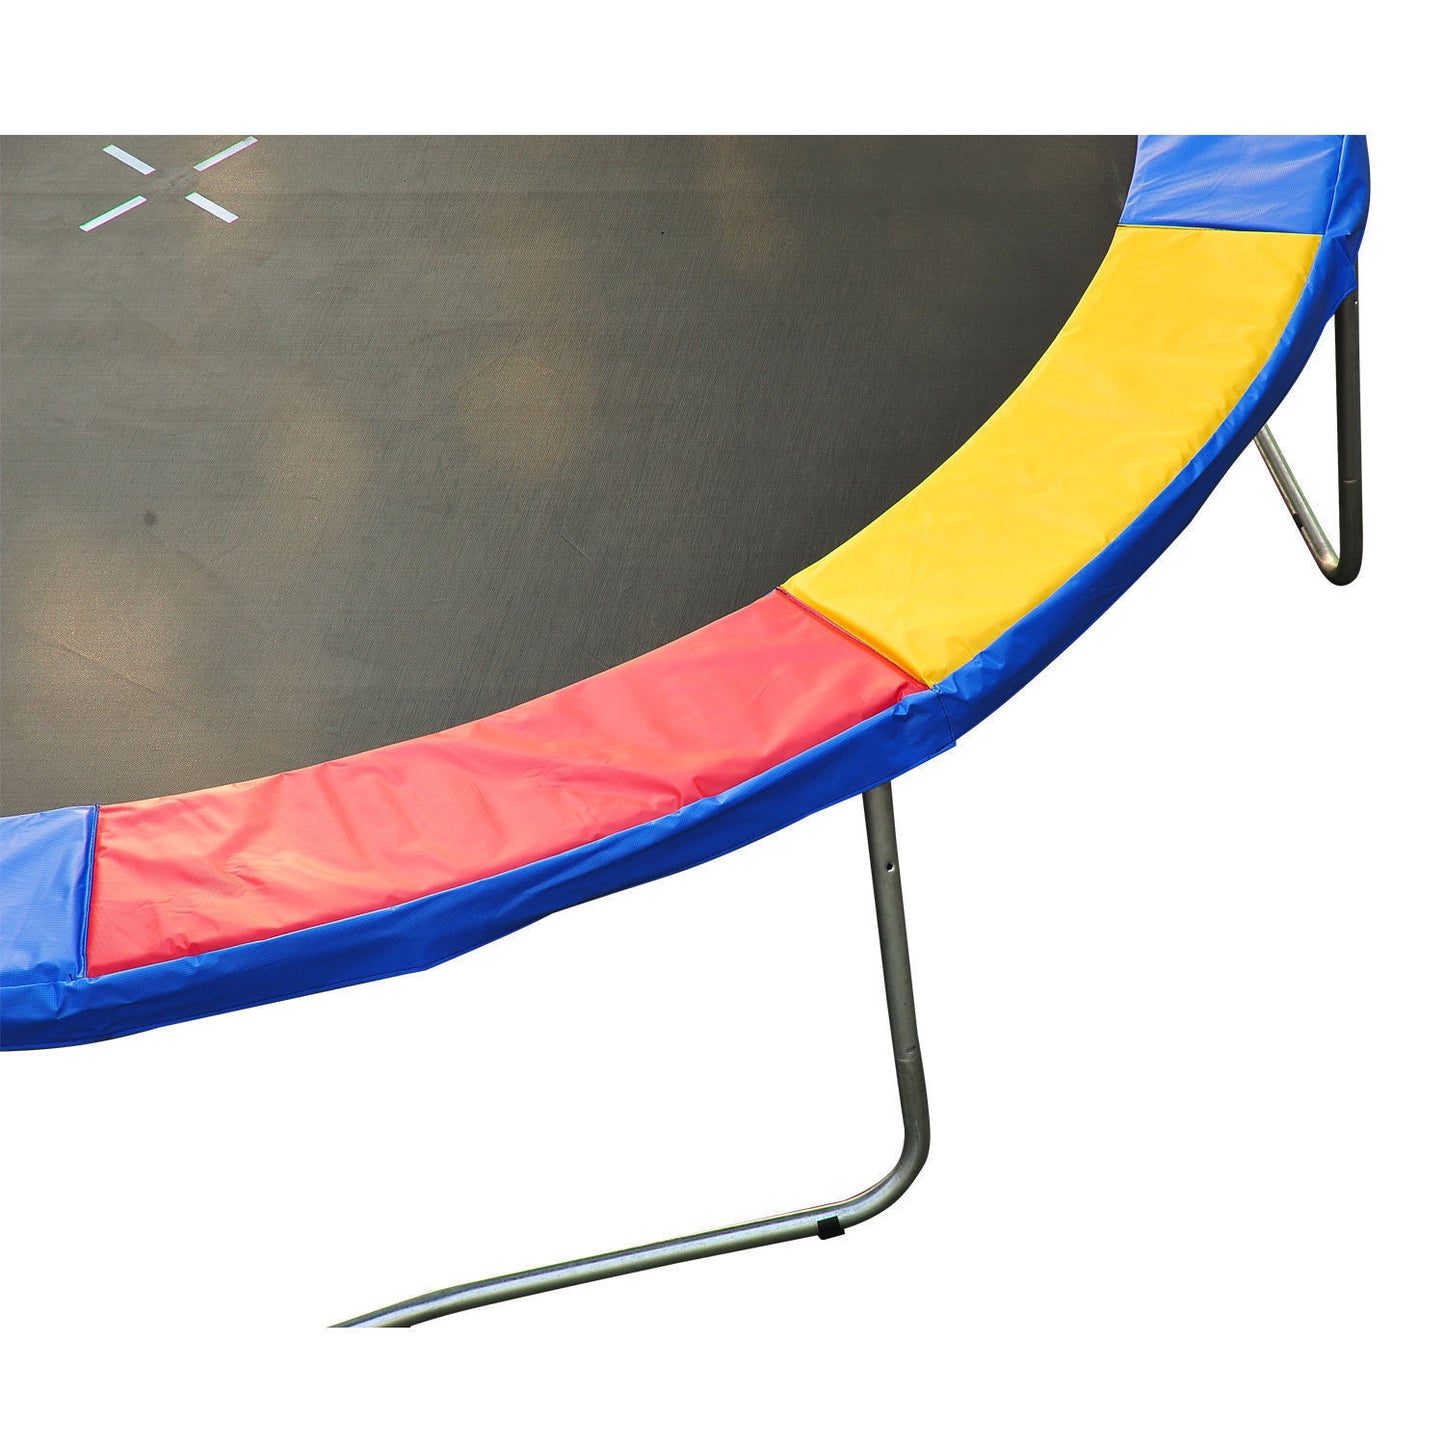 Bordure de sécurité pour trampoline Nancy's Union Hall - Housse - Rouge, Bleu - 244 cm